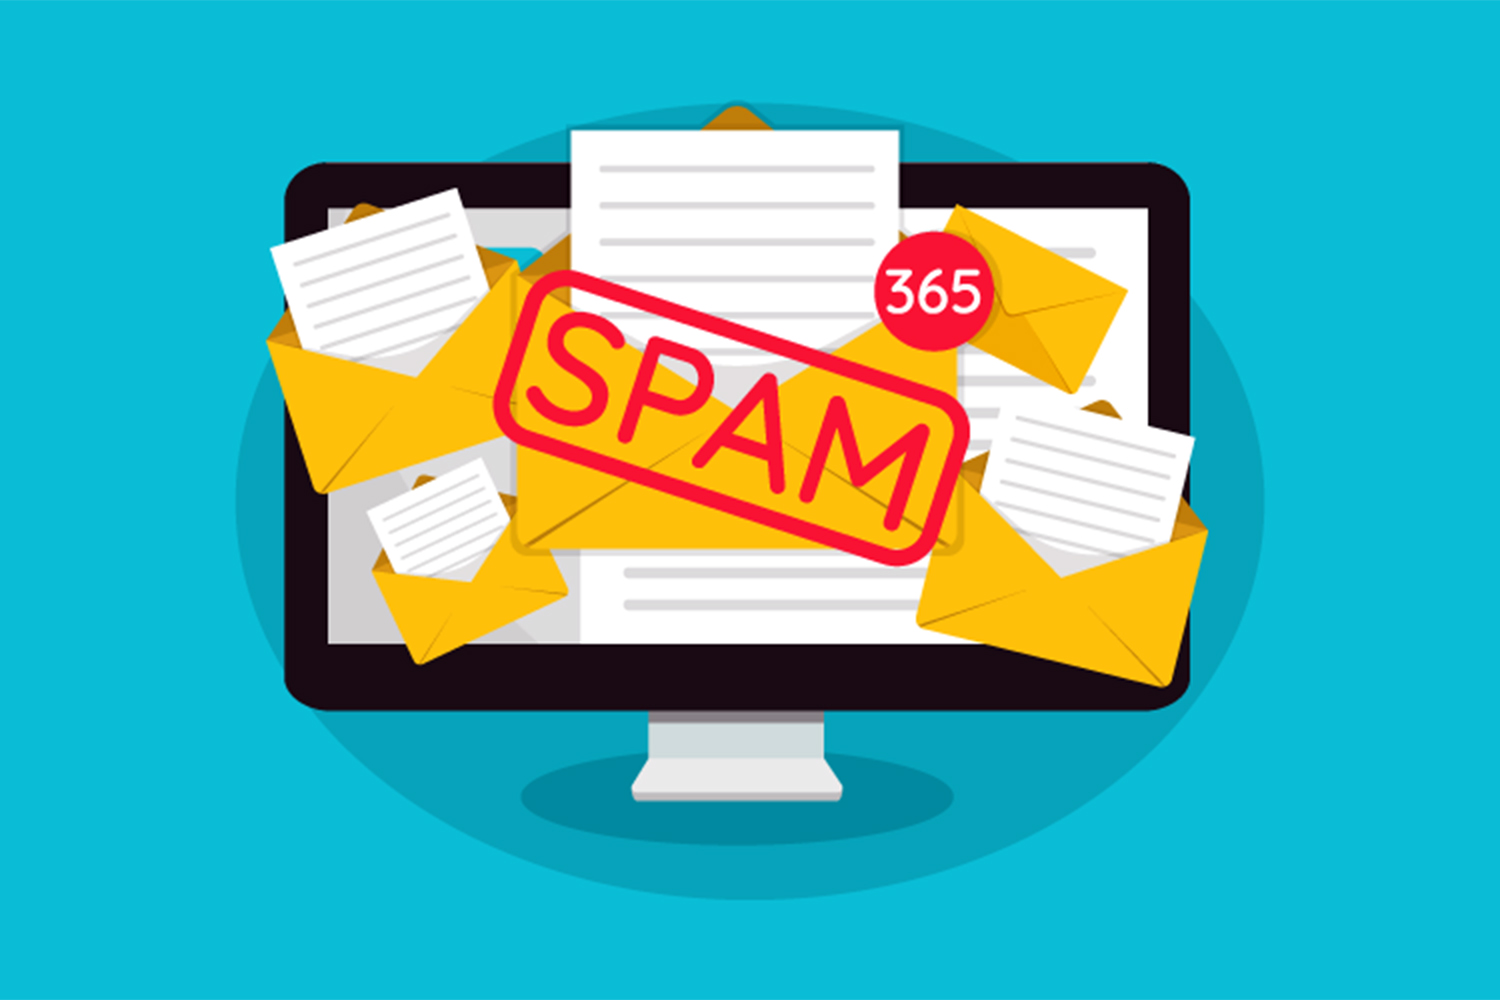 Correo spam: definición y cómo evitarlo - Segurilatam